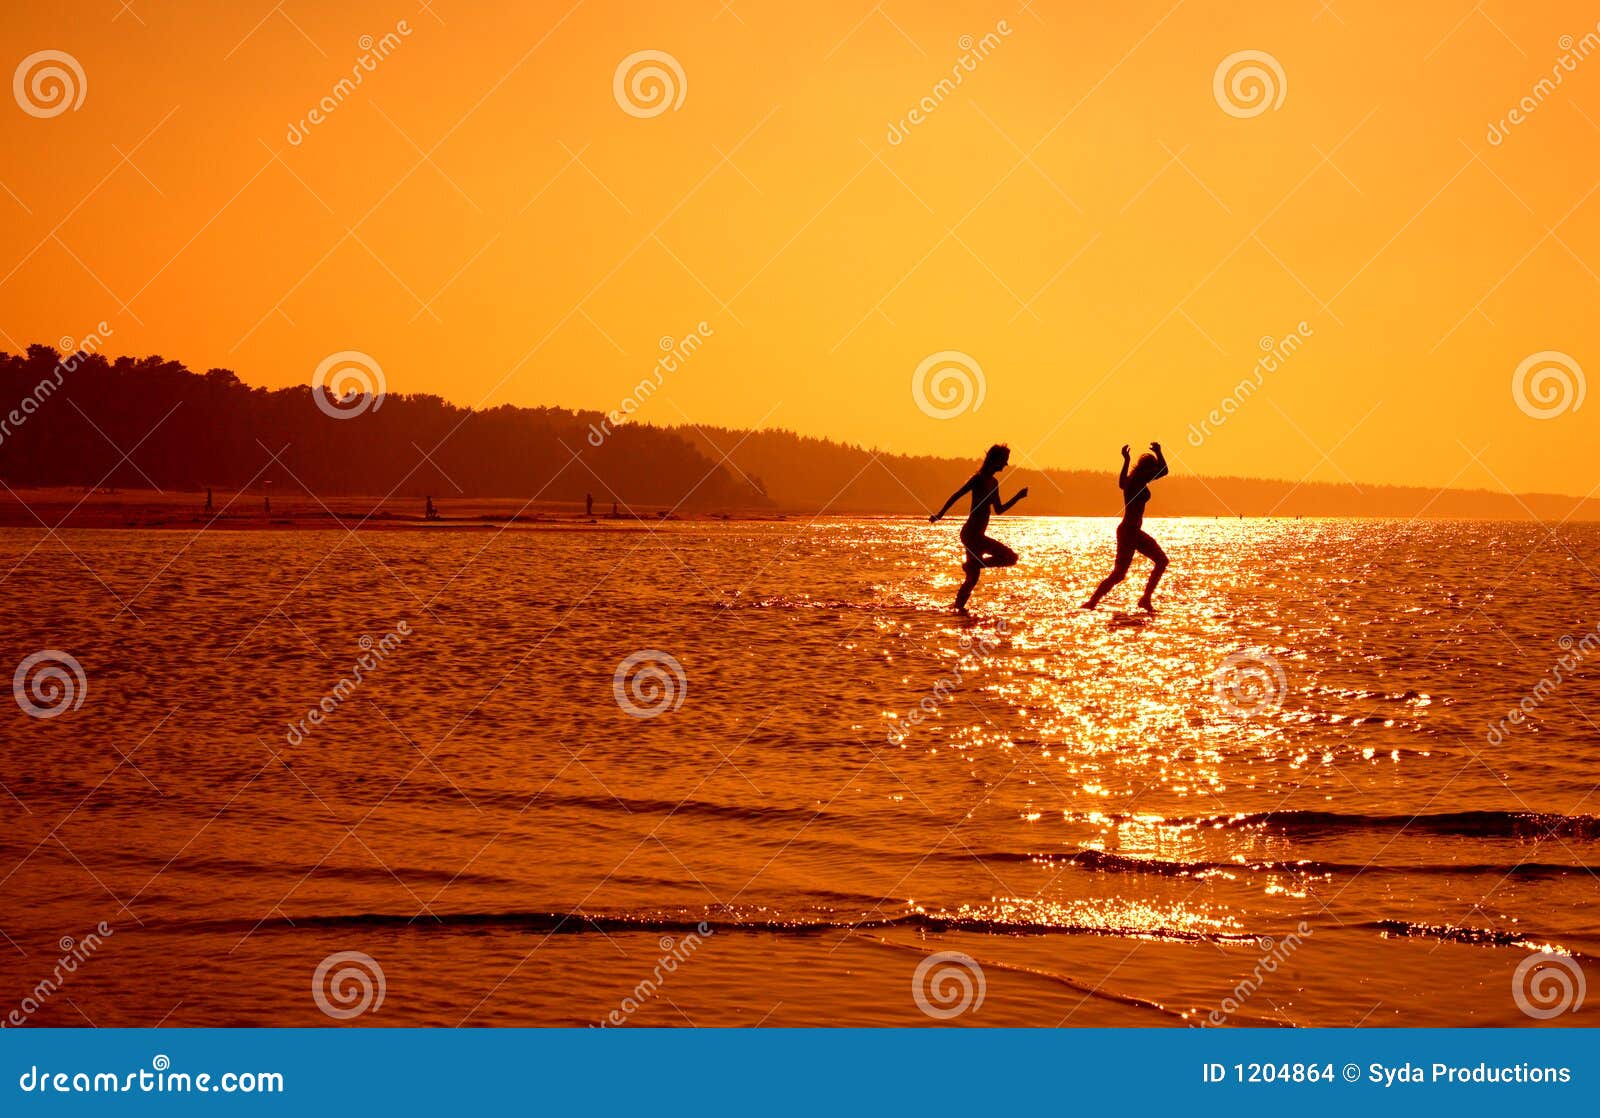 Mostre em silhueta uma imagem de duas meninas running na água